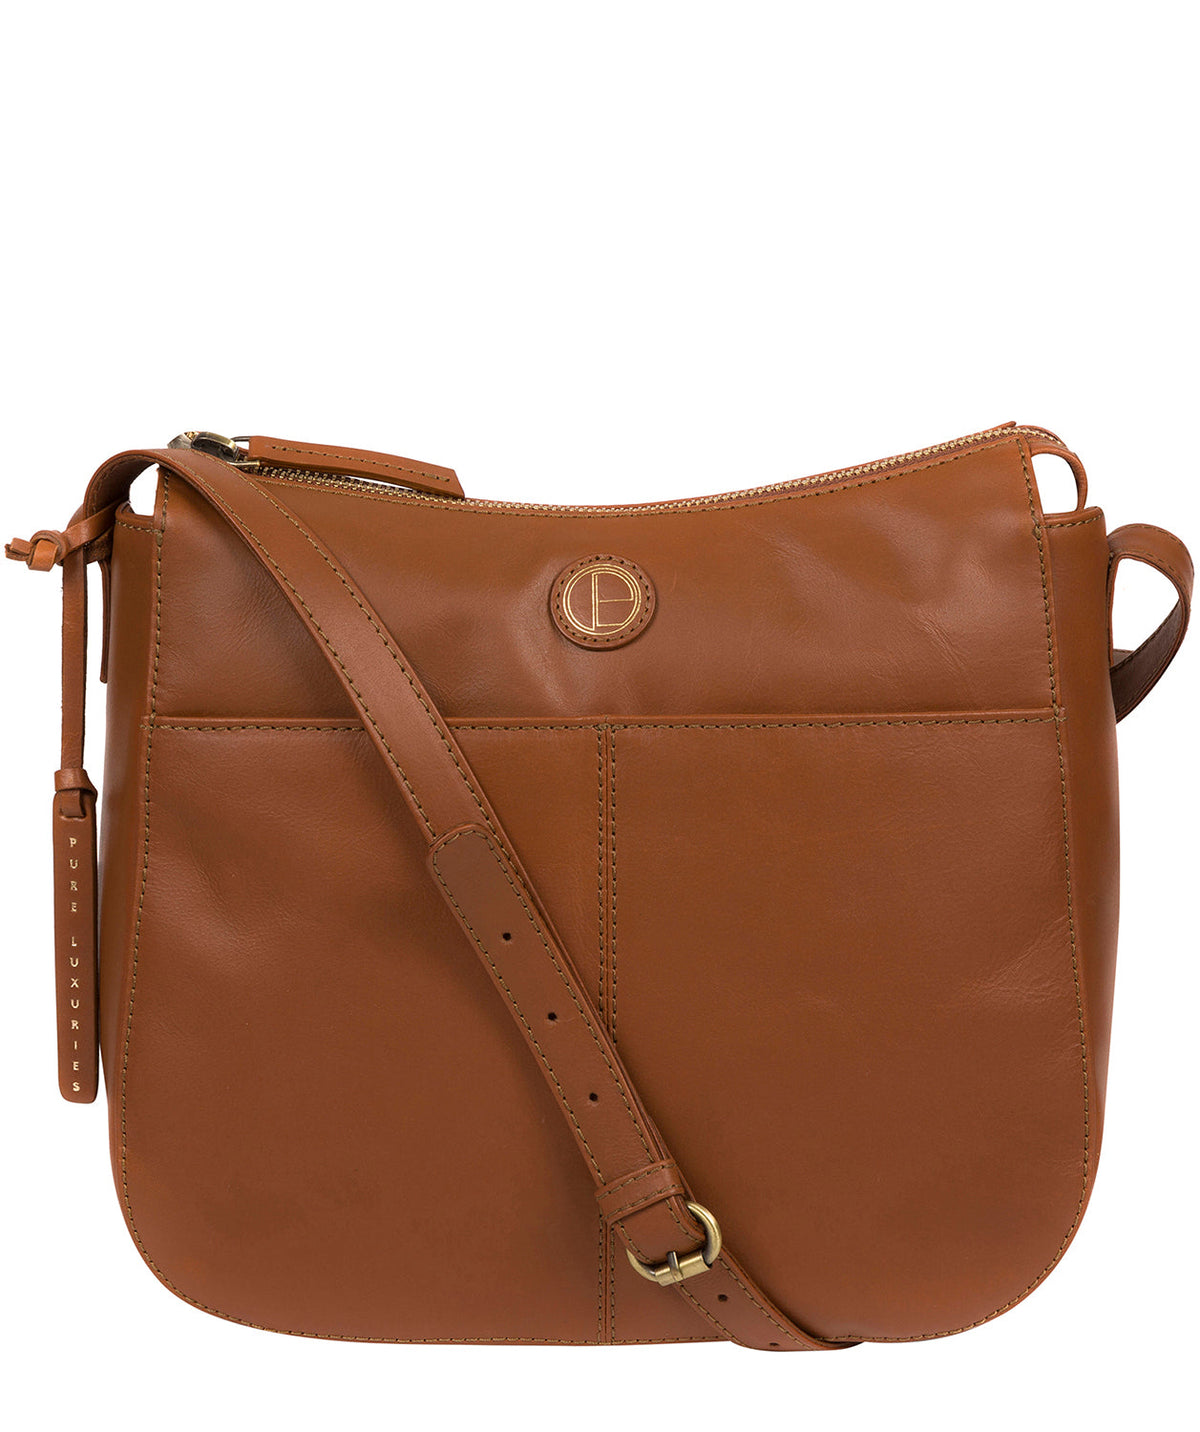 'Farlow' Vintage Dark Tan Leather Shoulder Bag